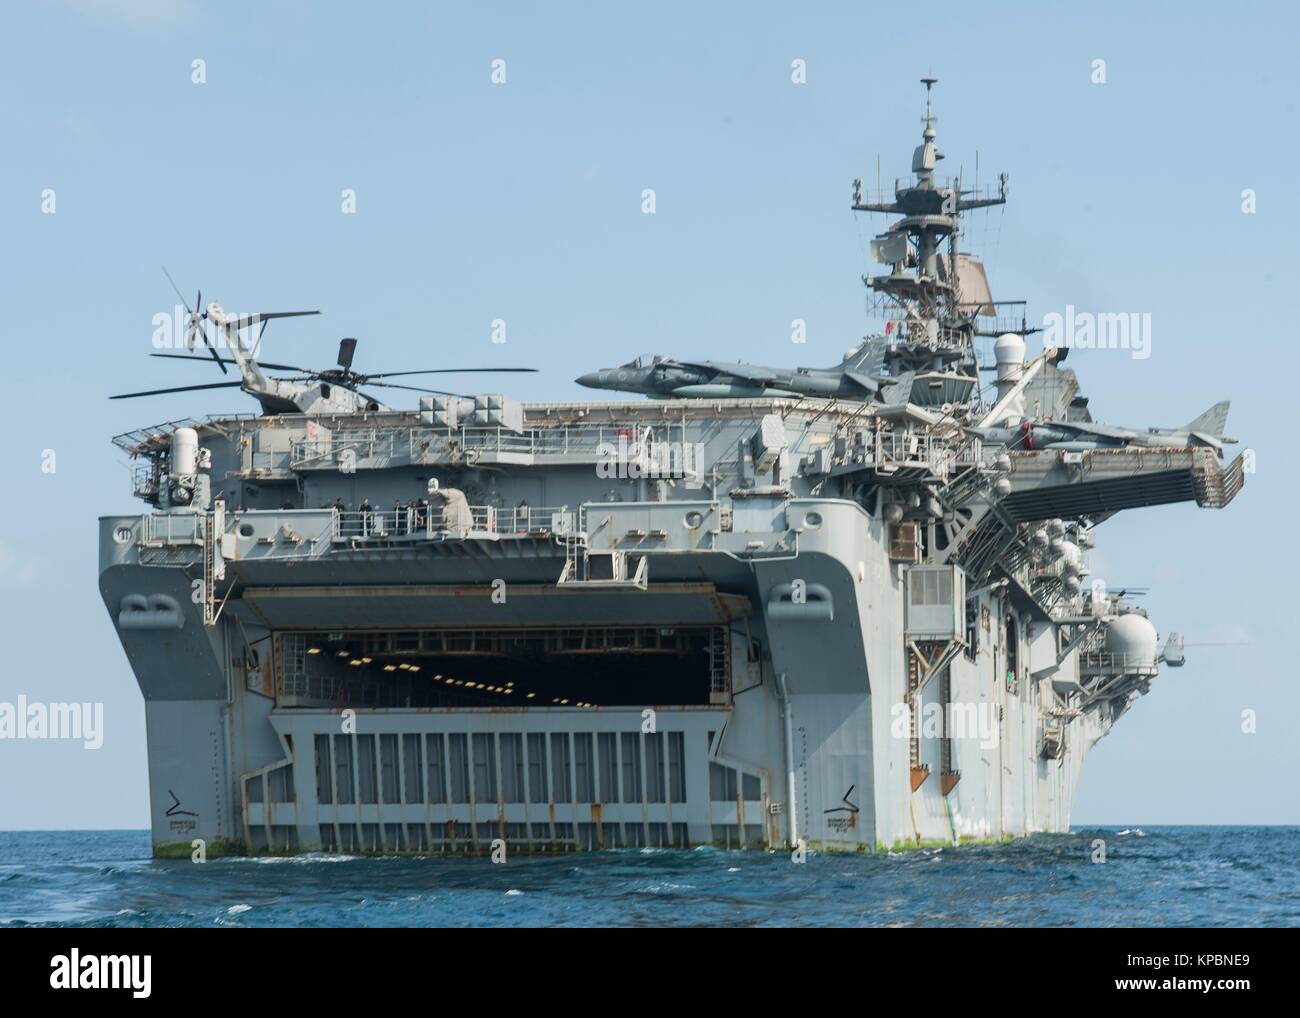 La Marina estadounidense de asalto anfibio de clase Wasp buque USS Makin Island se vaporiza en curso, 11 de diciembre de 2014 en el Golfo de Adén. Foto de stock